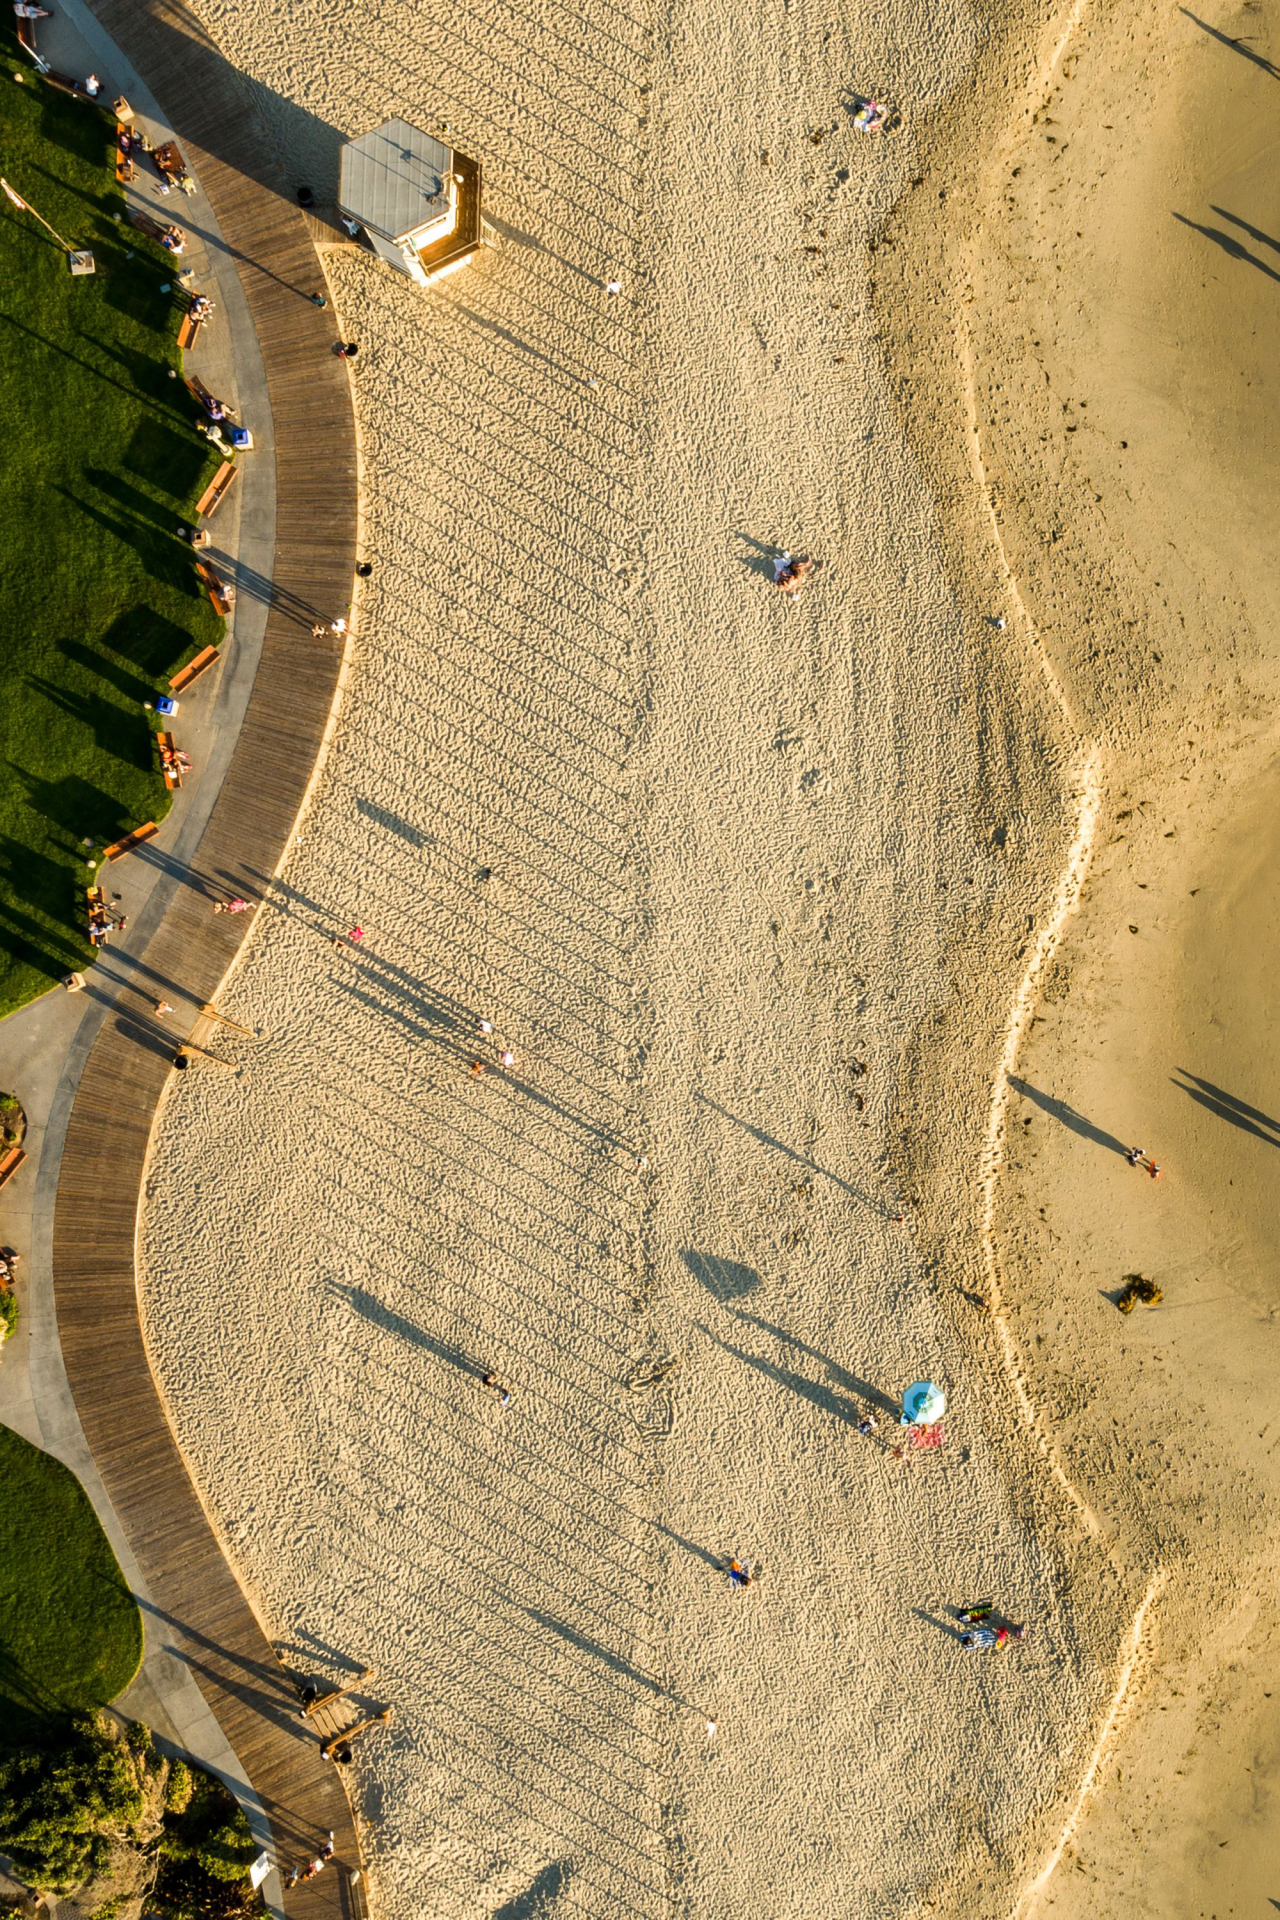 Sombras formadas pela obra criam efeito de linhas nas areias da praia de Laguna Beach